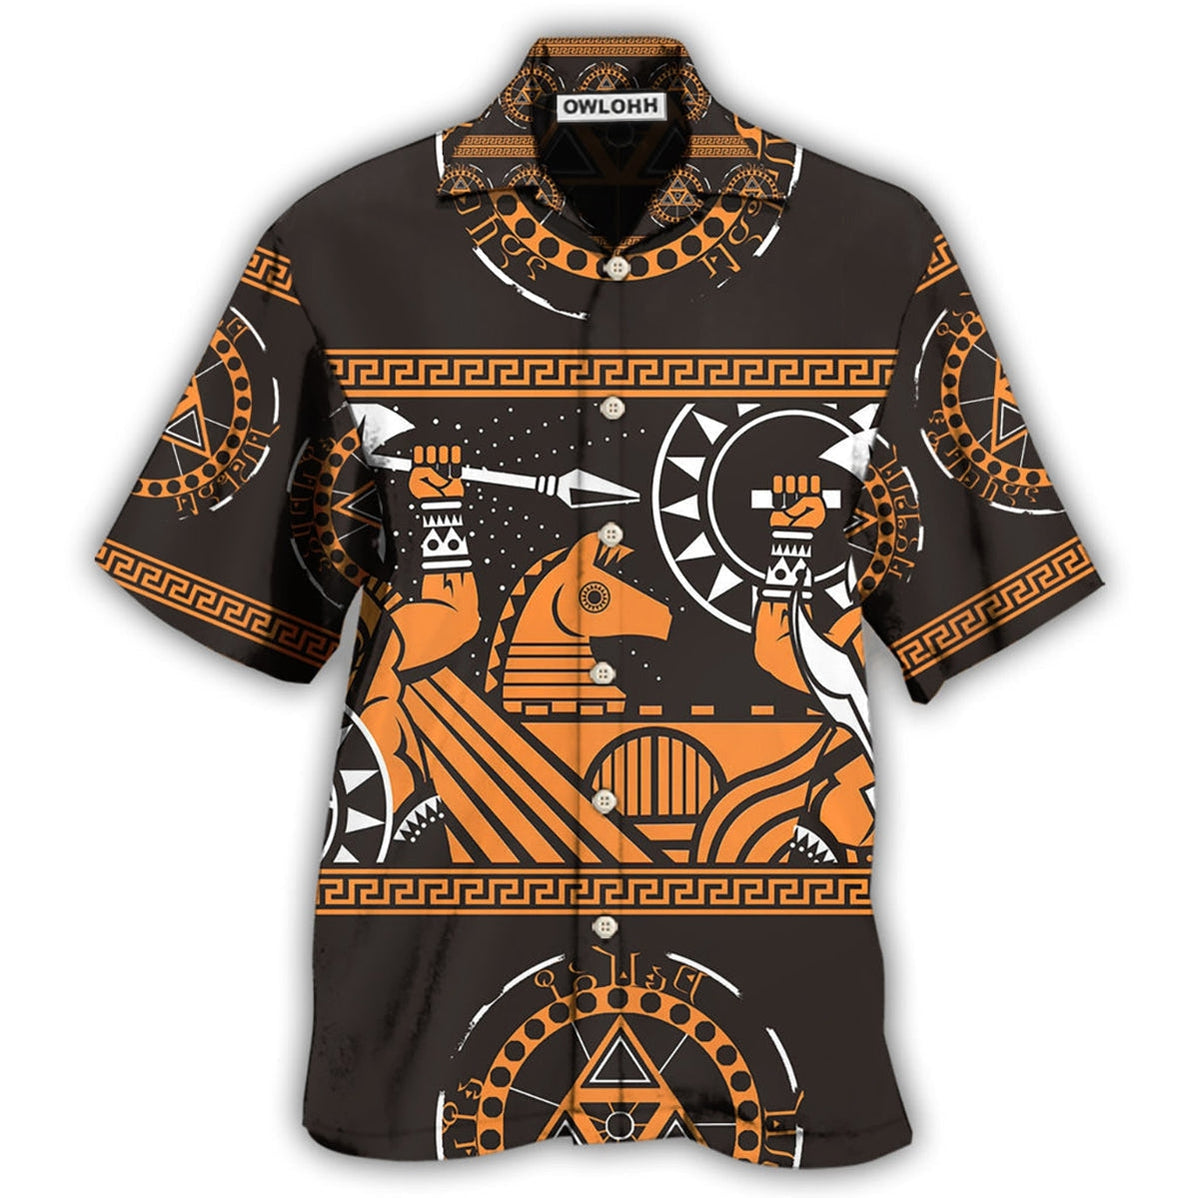 Hawaiian Shirt / Adults / S Warrior Spartan Warriors So Nice - Hawaiian Shirt - Owls Matrix LTD